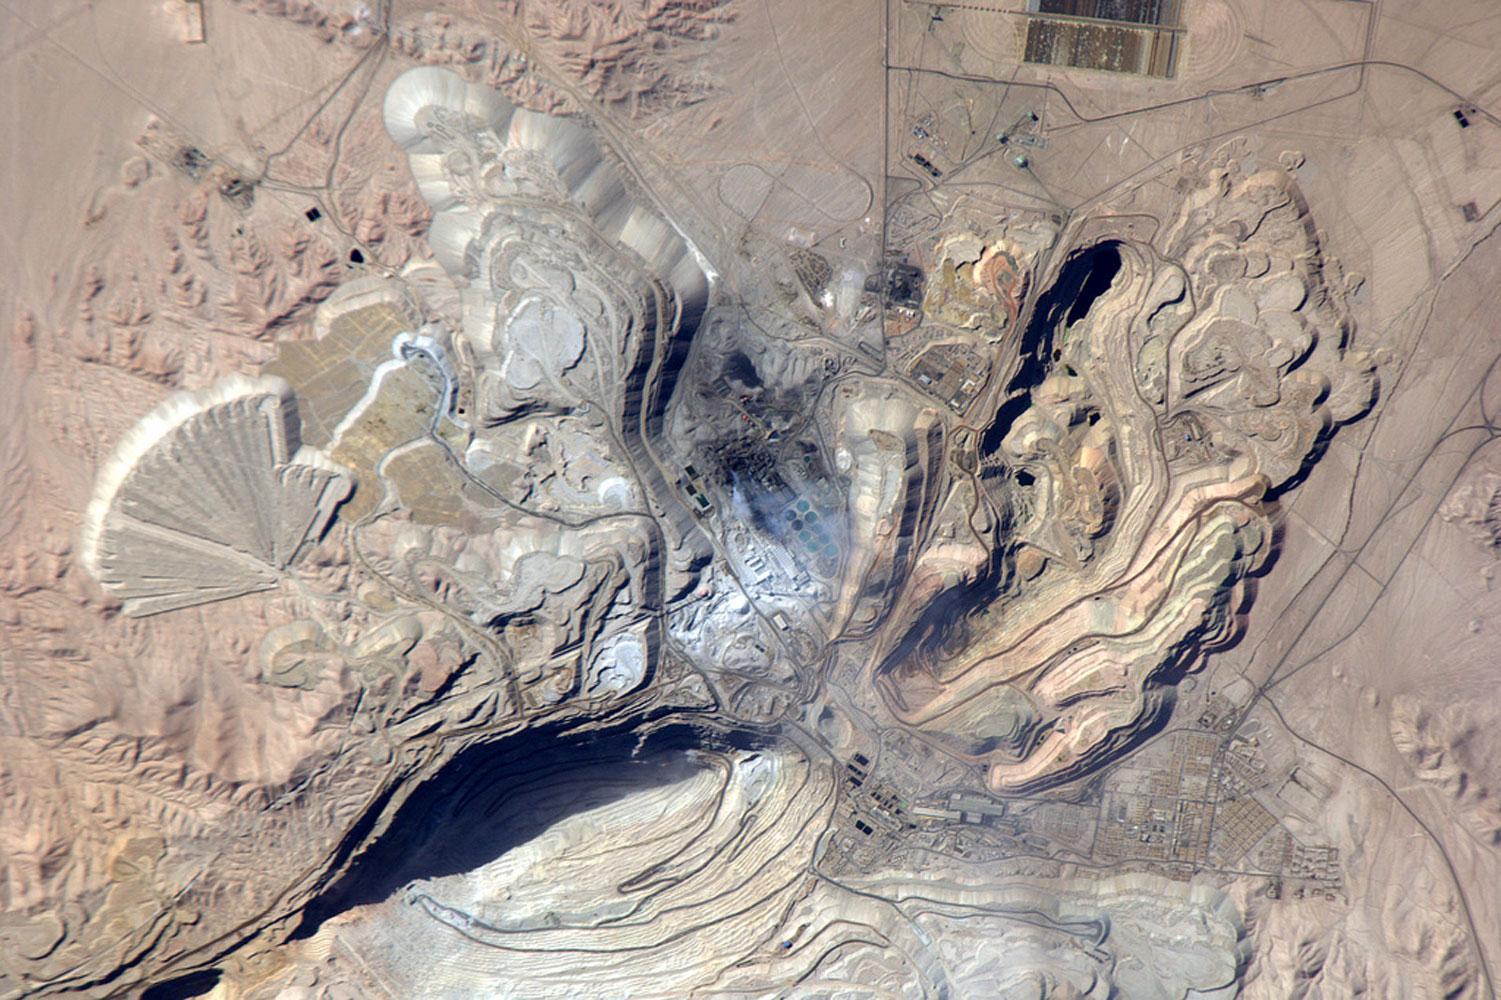 Chuquicamata copper mine, Chile, February 14, 2011